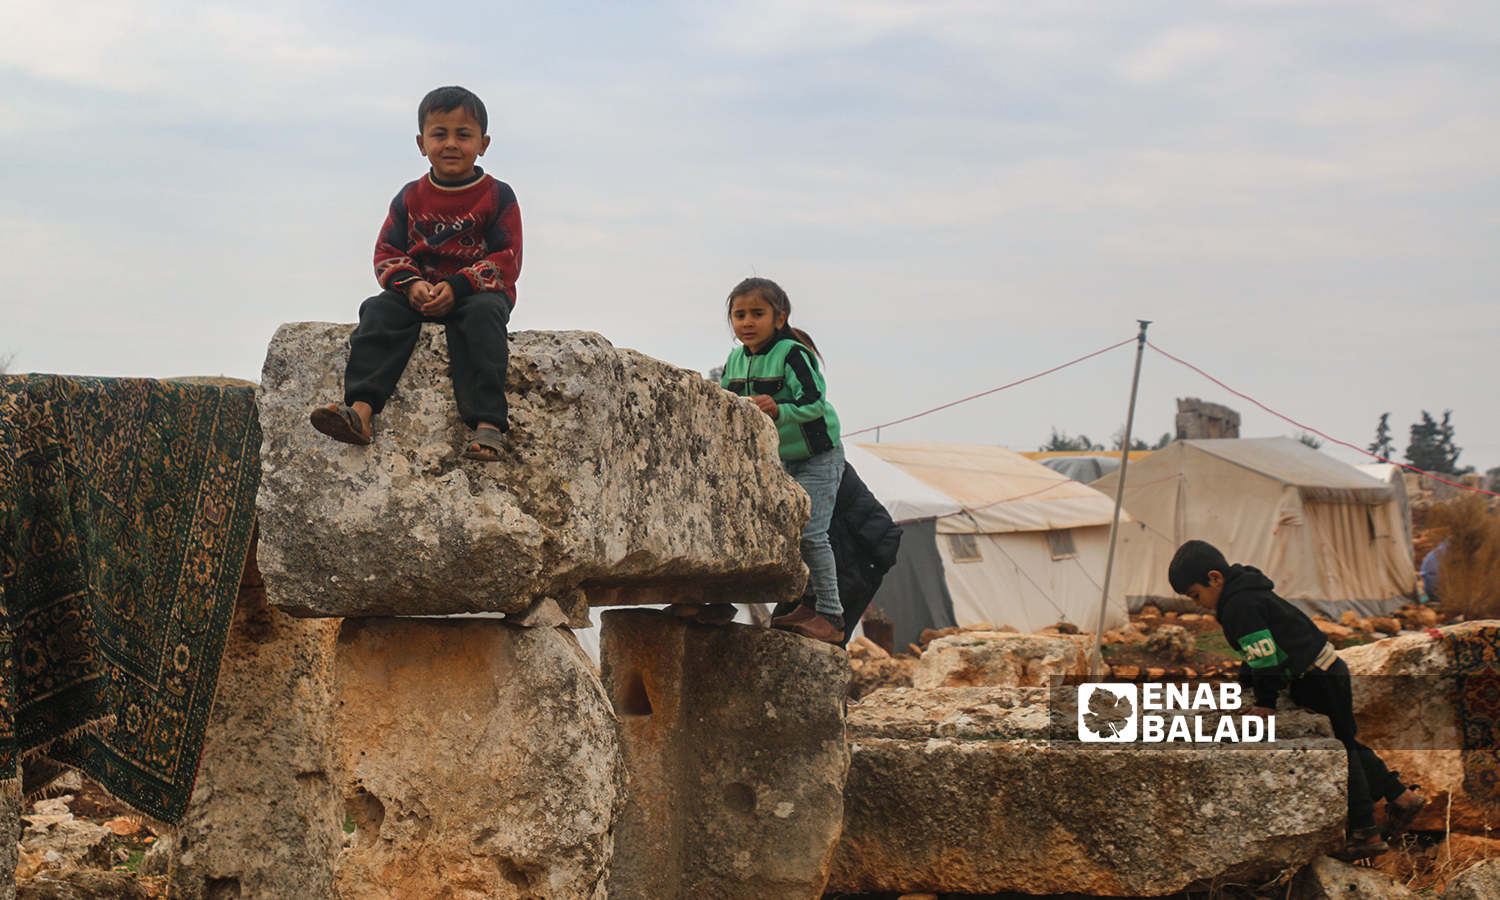 أطفال يلعبون بالقرب من خيامهم المنصوبة في موقع أثري في منطقة سرجبلة الأثرية في ريف إدلب الشمالي- 22 كانون الثاني 2022 (عنب بلدي / إياد عبد الجواد)
